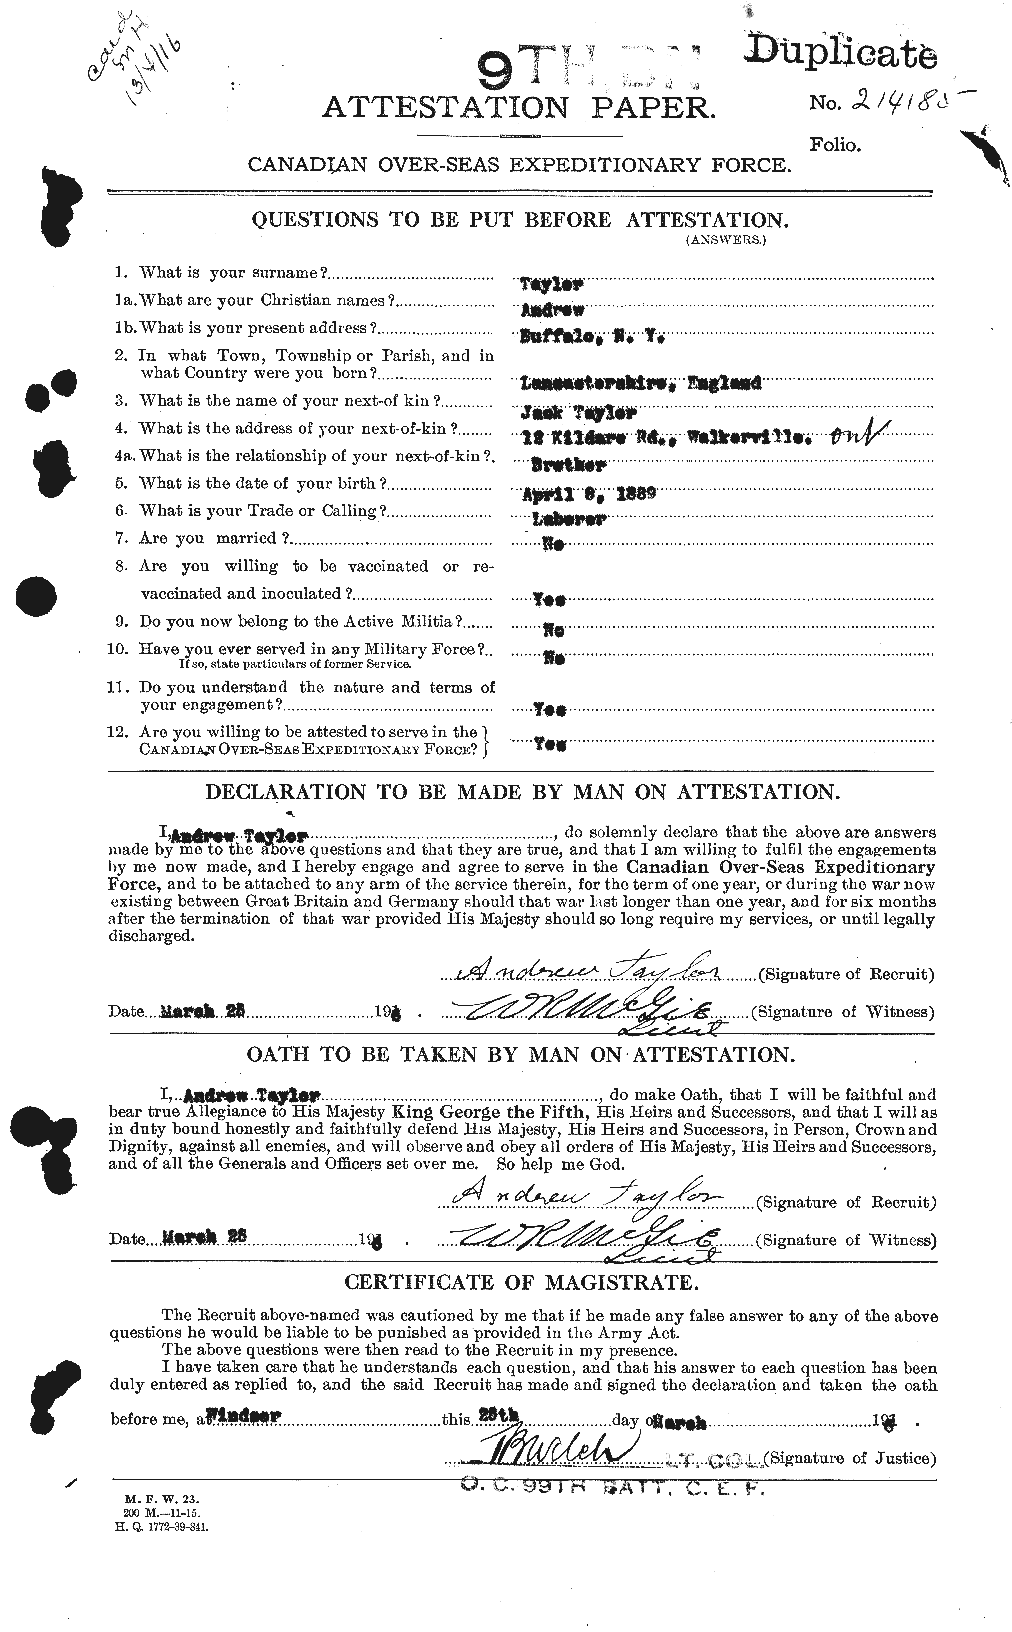 Dossiers du Personnel de la Première Guerre mondiale - CEC 626221a